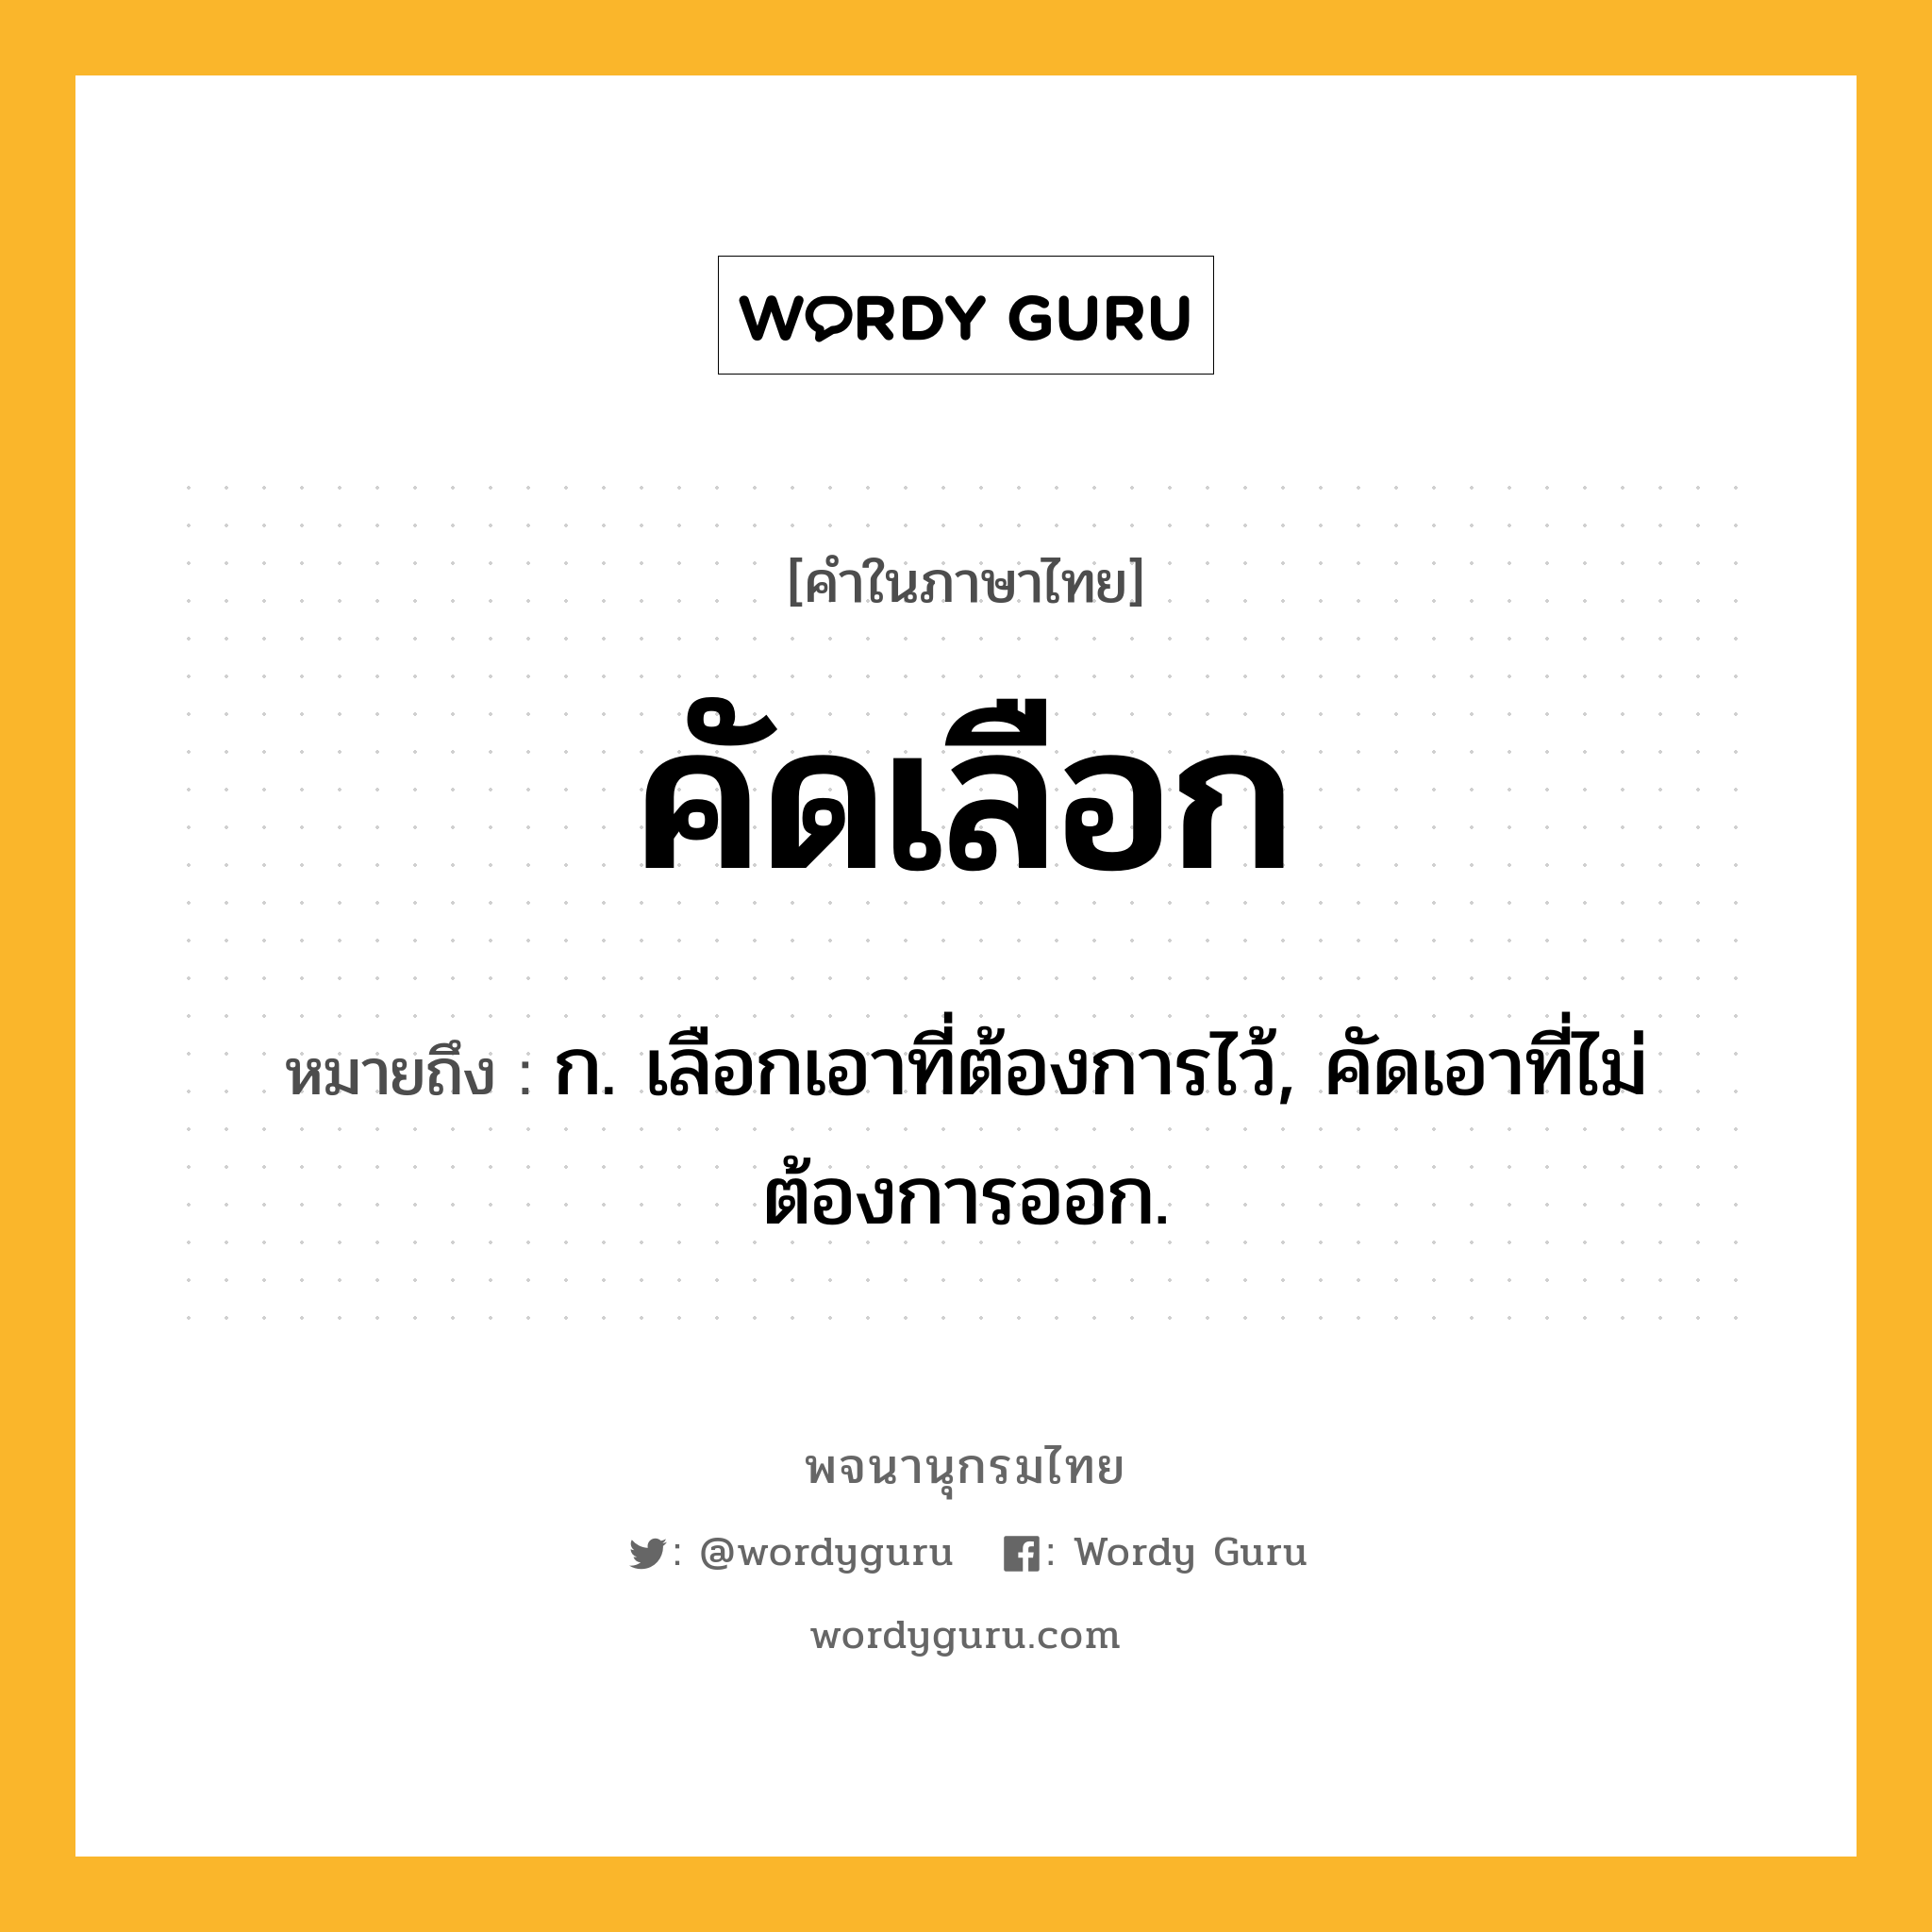 คัดเลือก ความหมาย หมายถึงอะไร?, คำในภาษาไทย คัดเลือก หมายถึง ก. เลือกเอาที่ต้องการไว้, คัดเอาที่ไม่ต้องการออก.